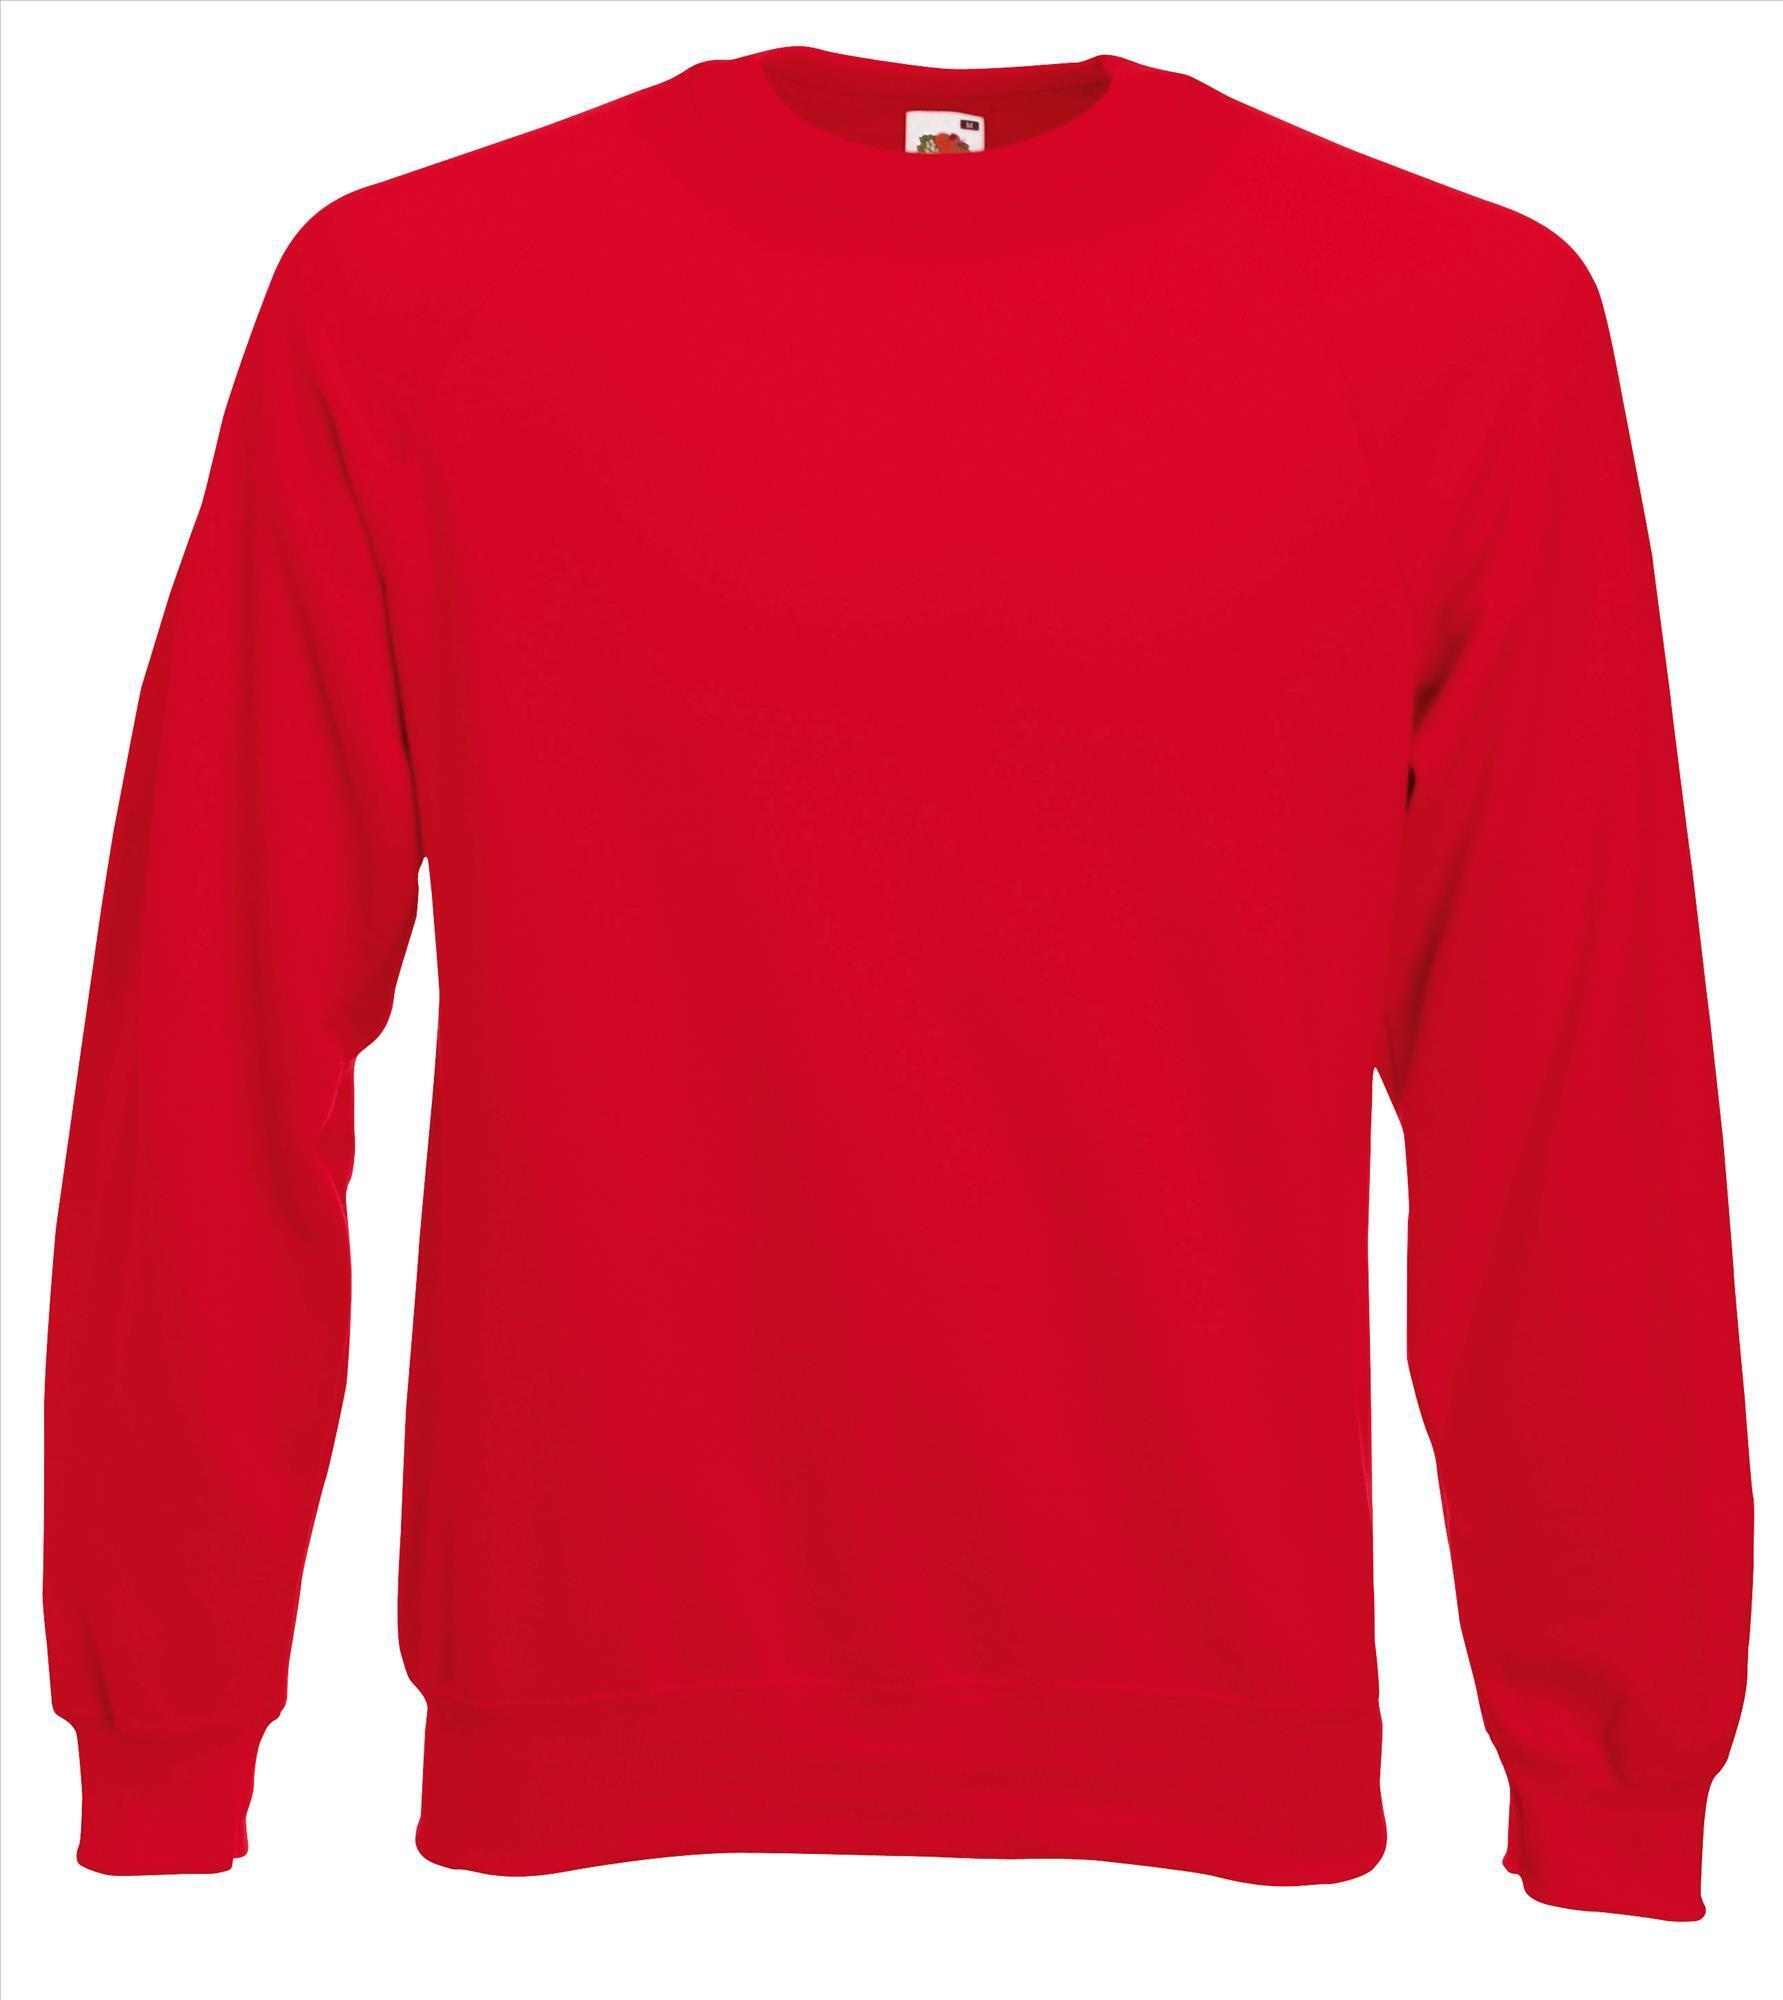 Sweater rood voor mannen bedrukbaar te personaliseren sweatshirts